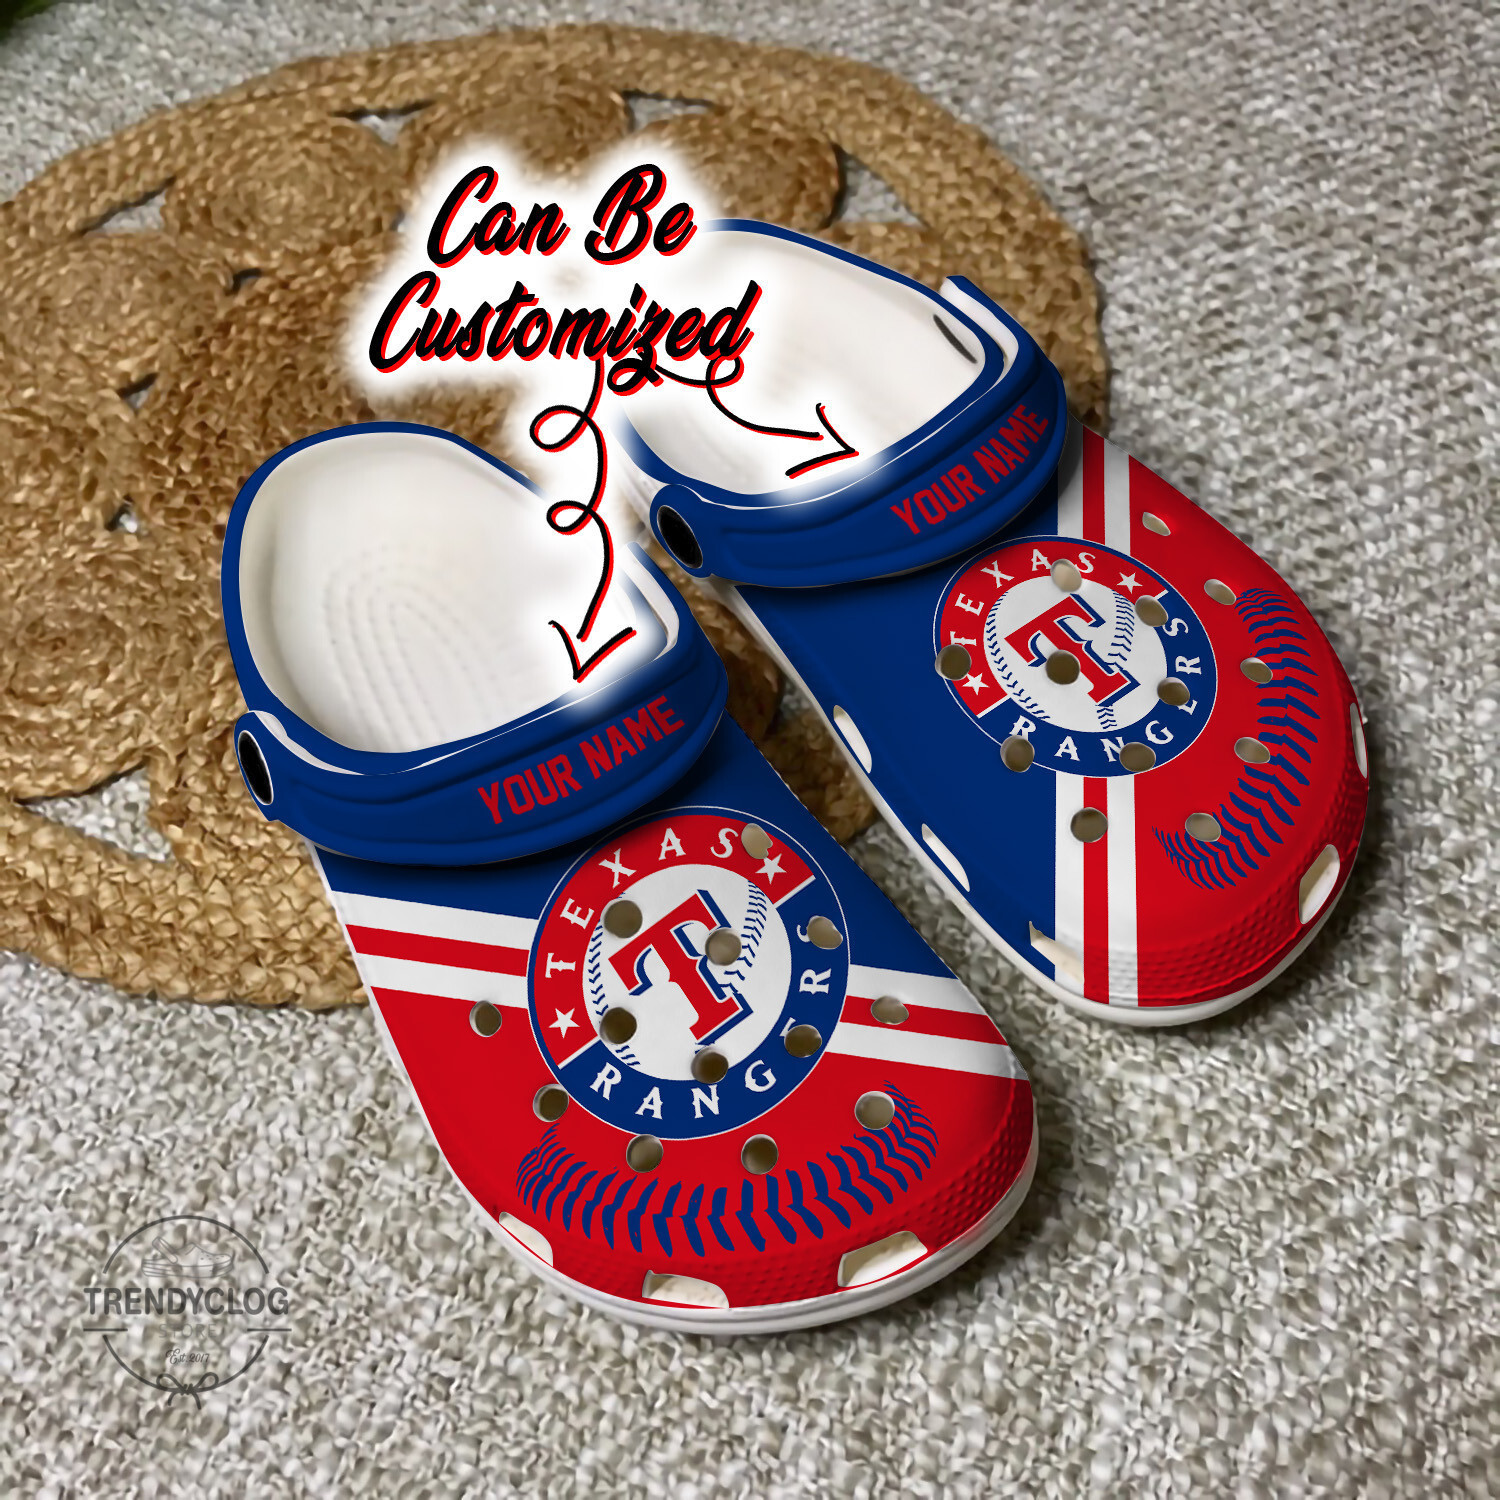 Baseball TRangers Personalized Baseball Logo Team Clog Crocs Shoes